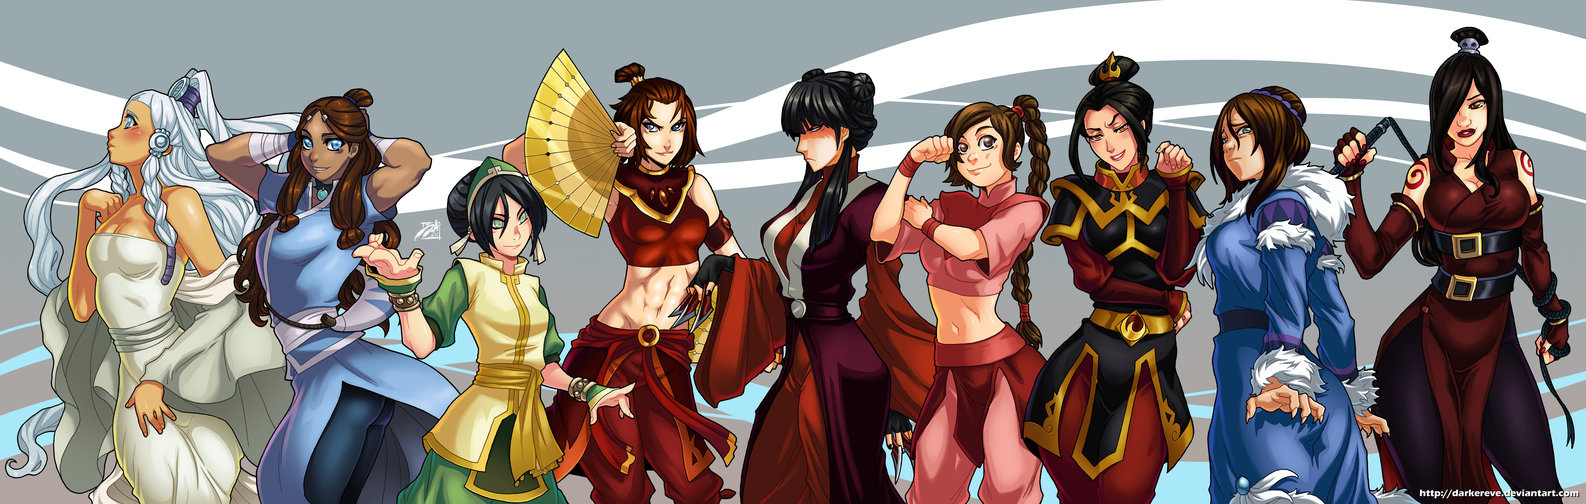 Avatar The Legend Of Korra Wallpapers Anime Hq Avatar